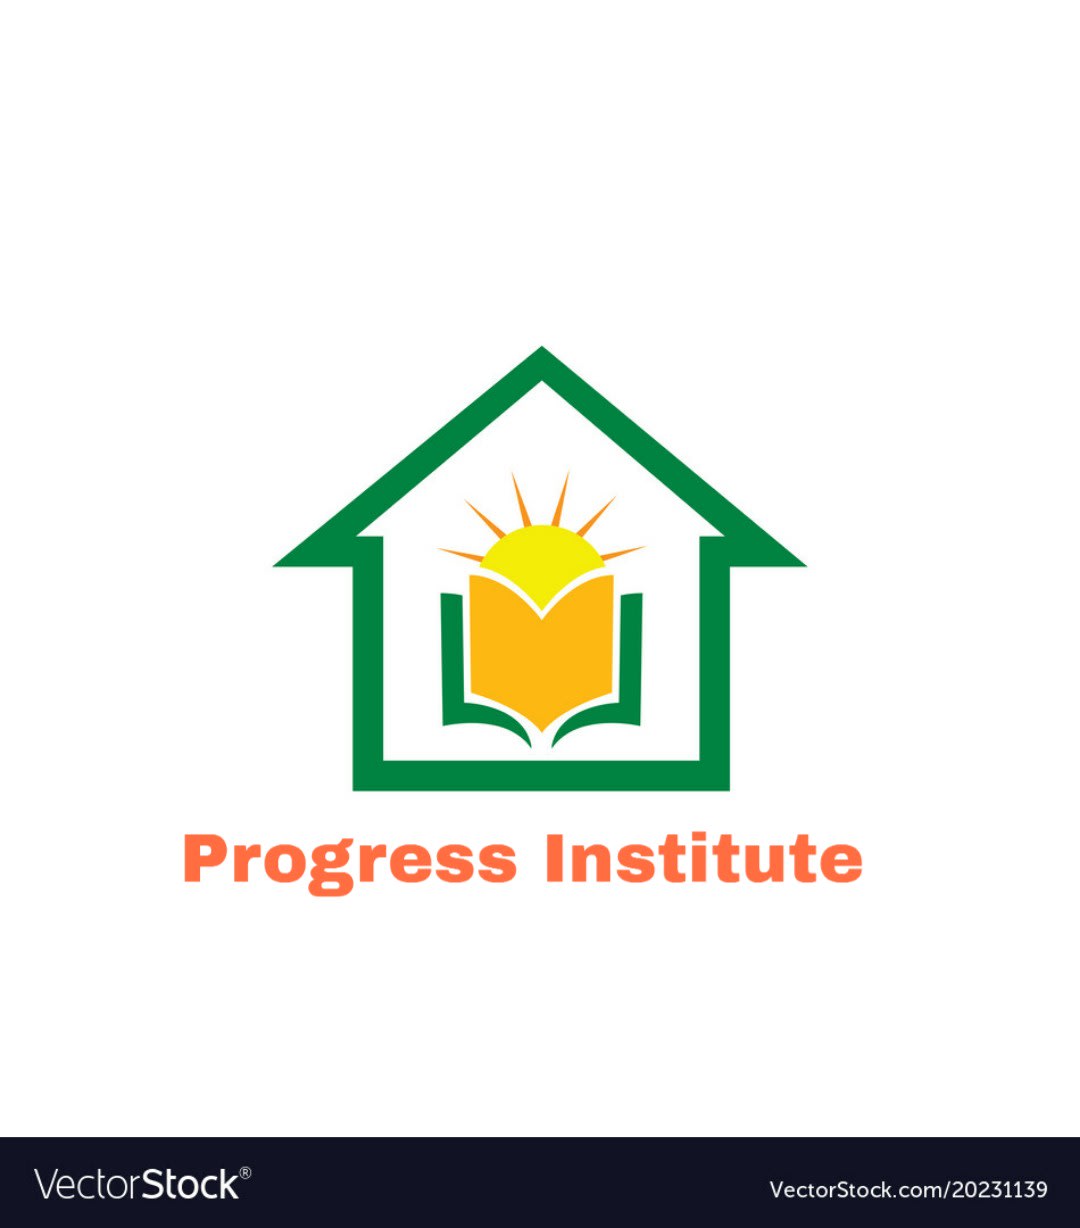 Progress Institute